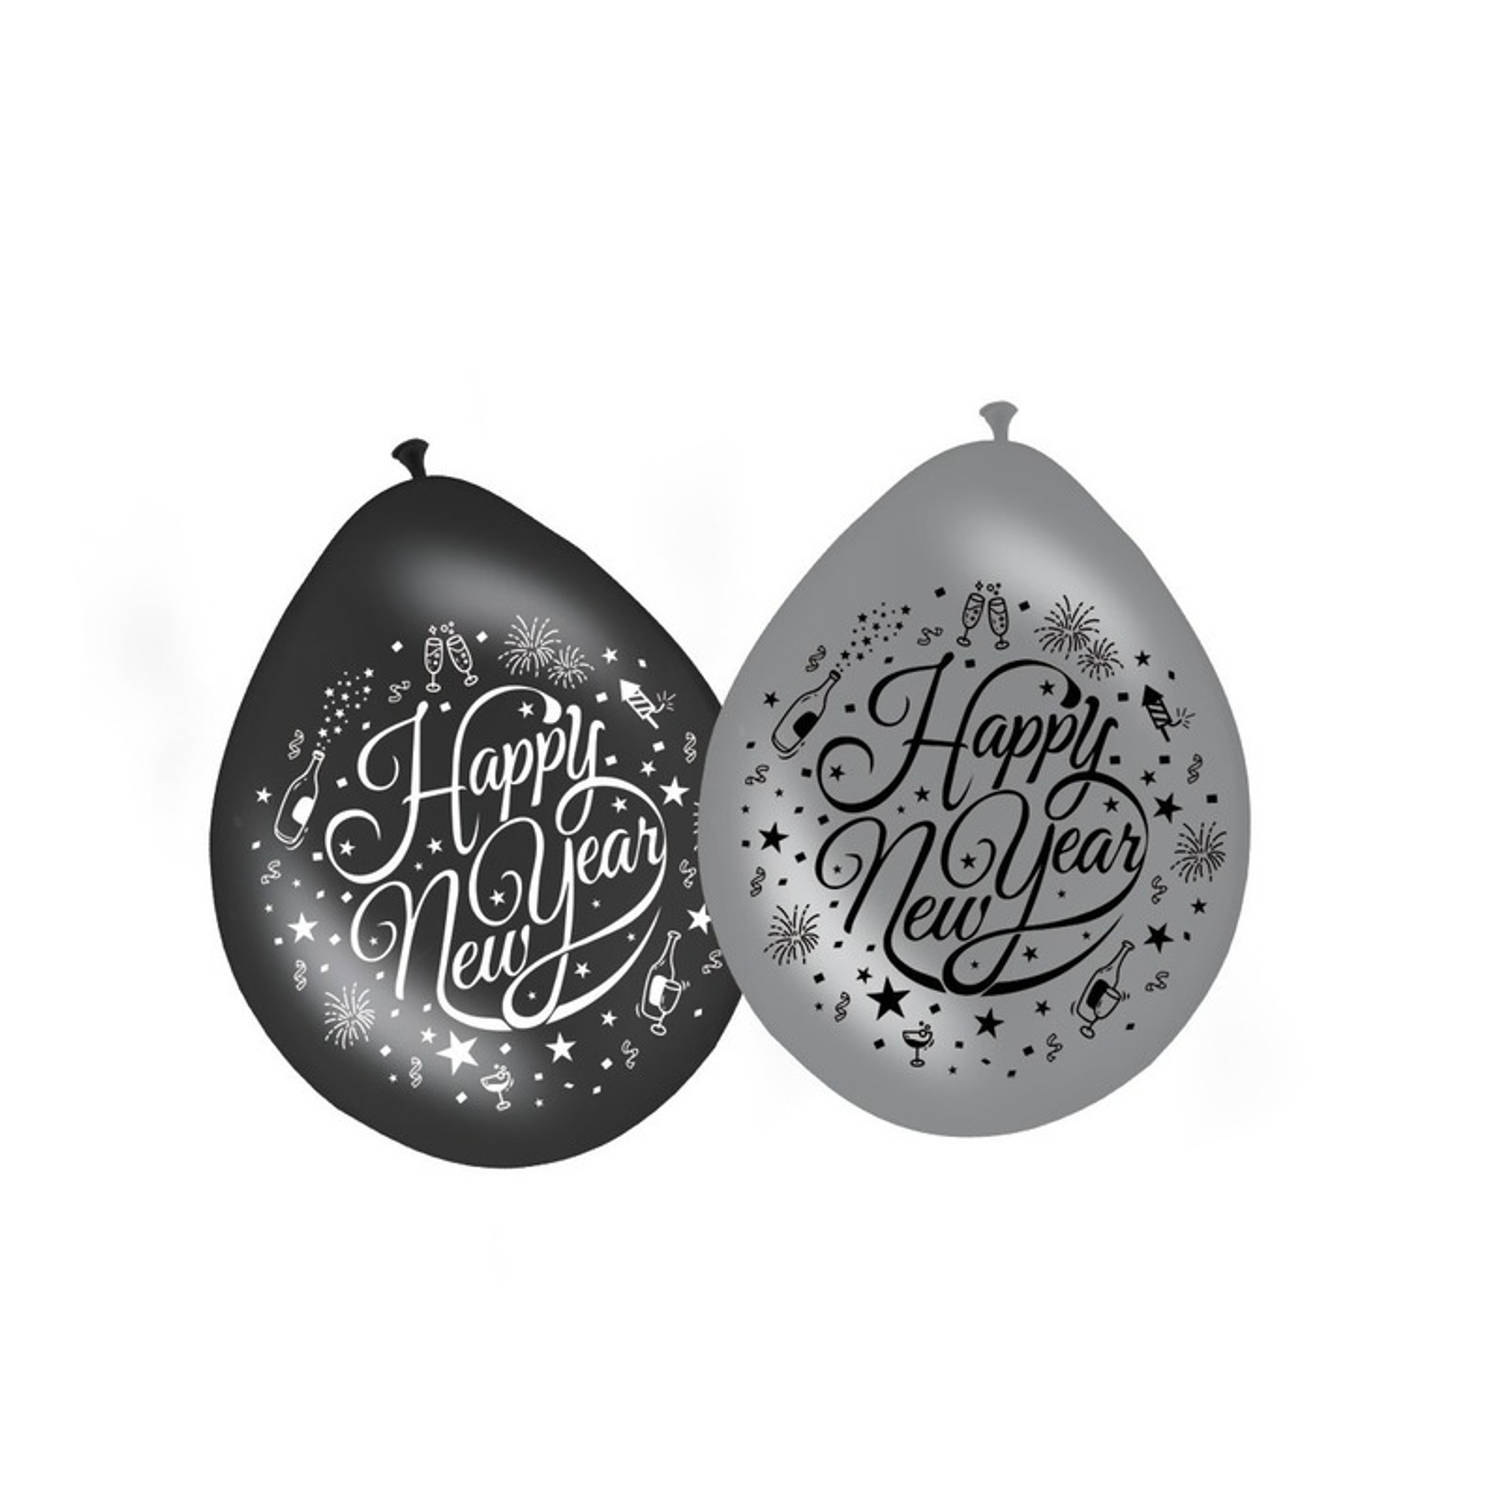 16x stuks Happy New Year ballonnen zwart/zilver - Ballonnen